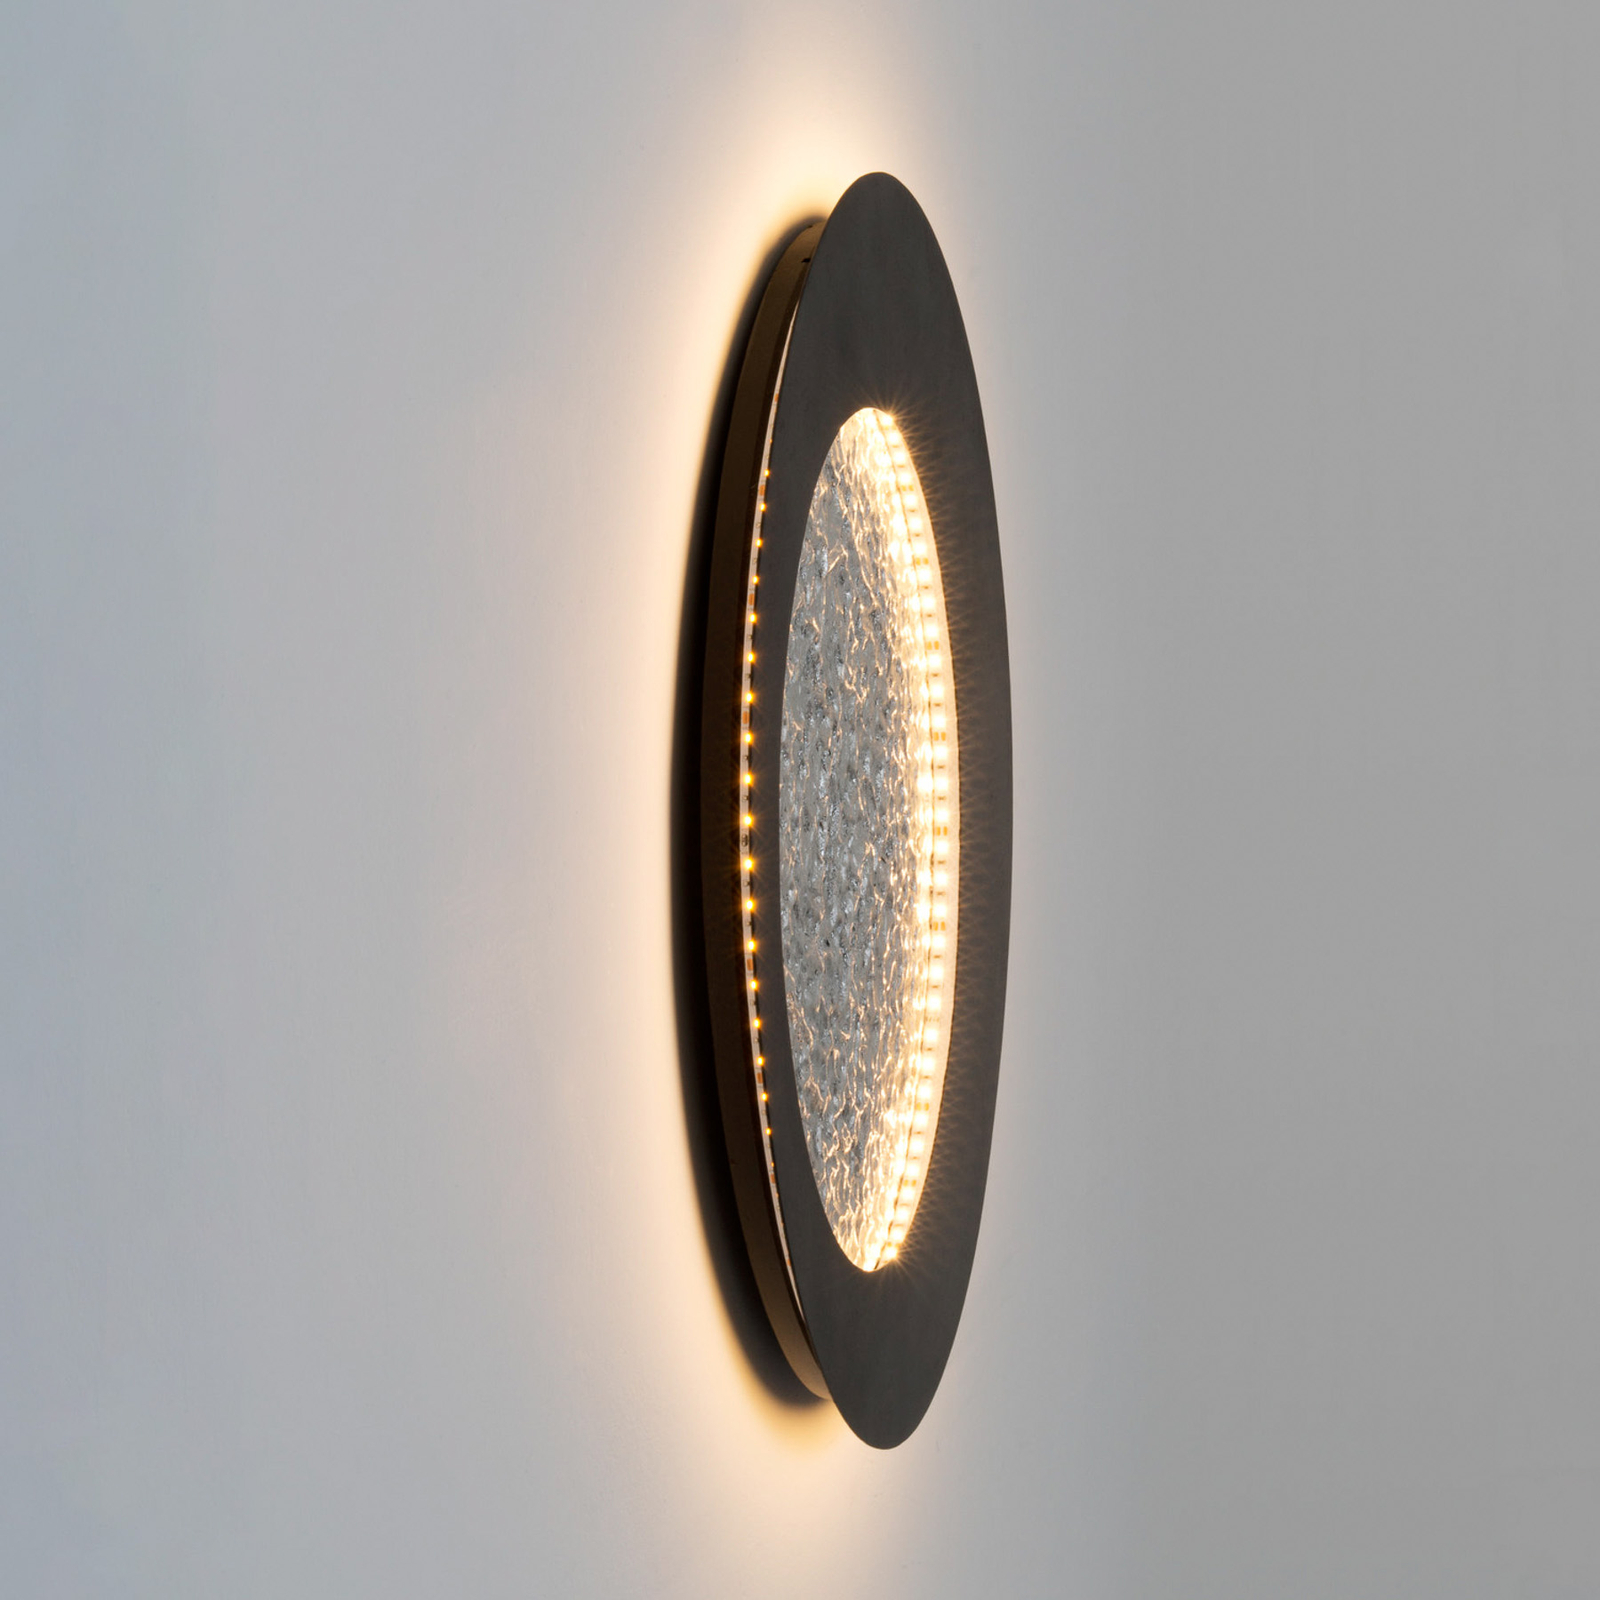 Nástěnné svítidlo Plenilunio LED, hnědočerná/stříbrná, 60 cm